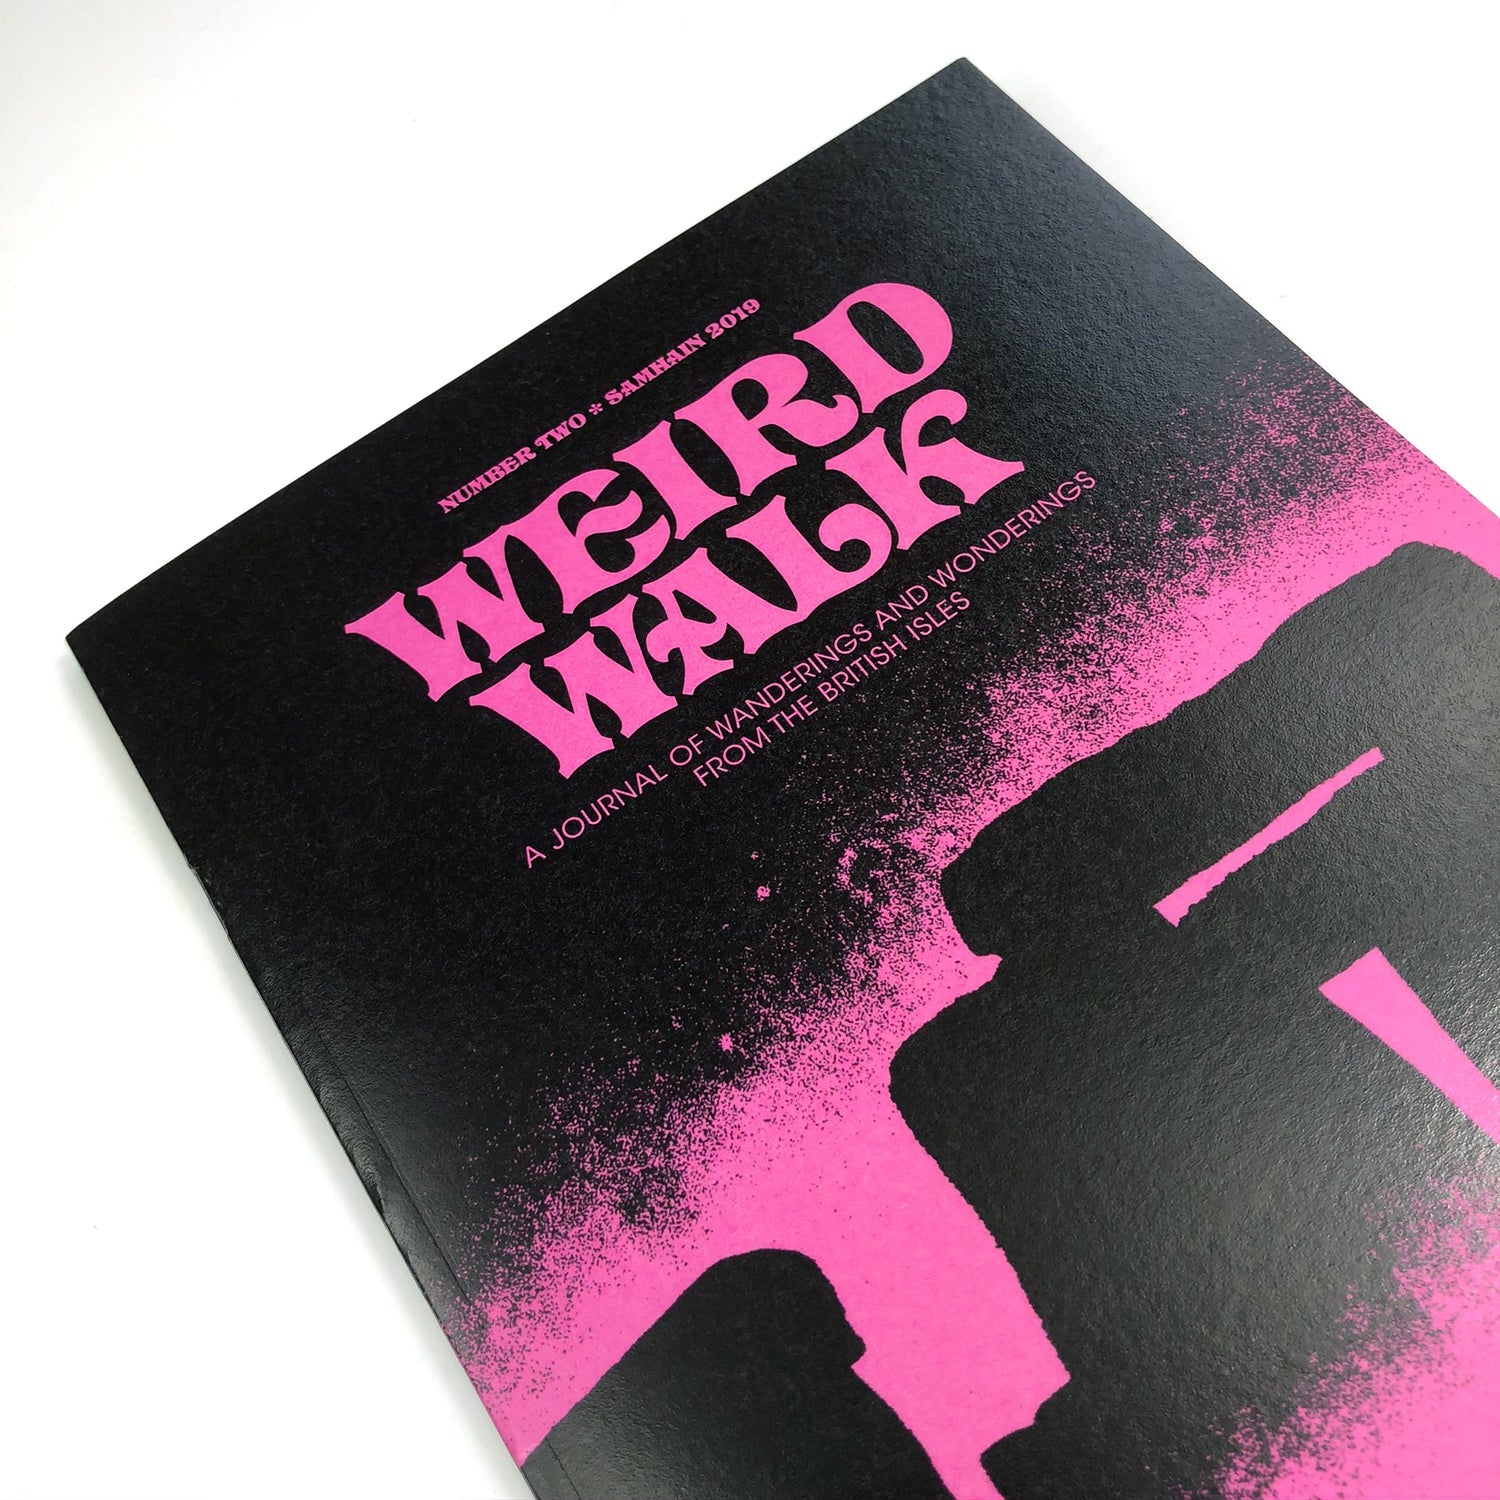 Weird Walk - Weird Walk Issue 2  - Haus Nostromo